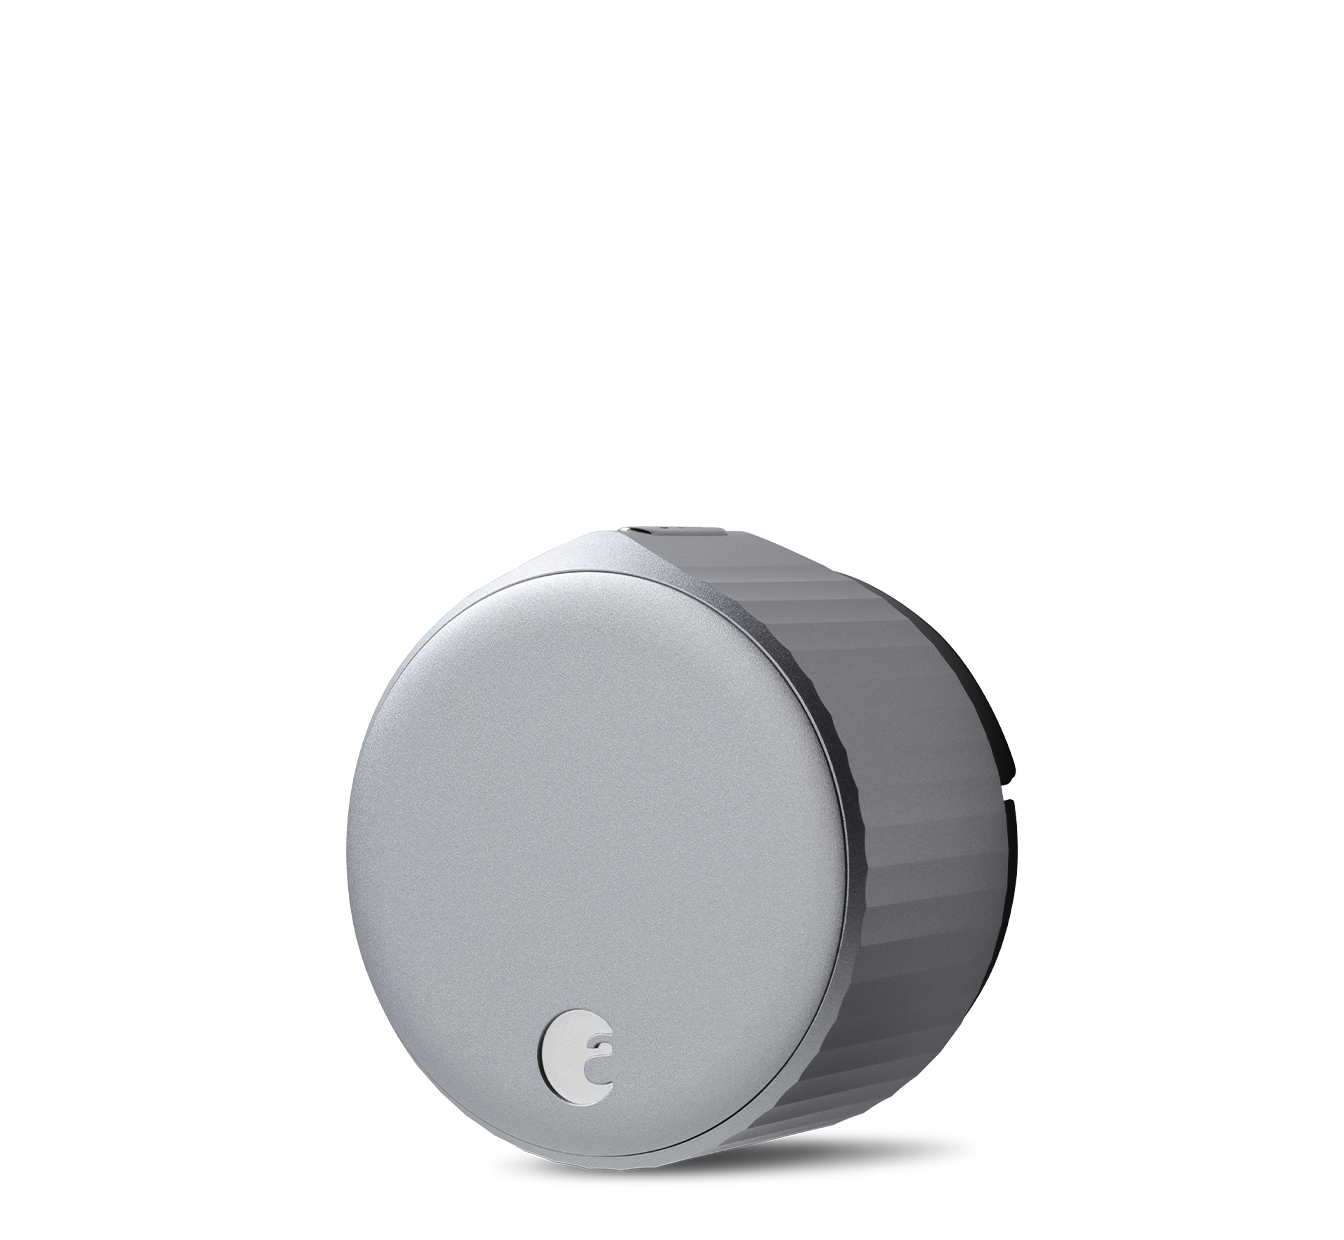 August Wi-Fi Smart Lock Silver